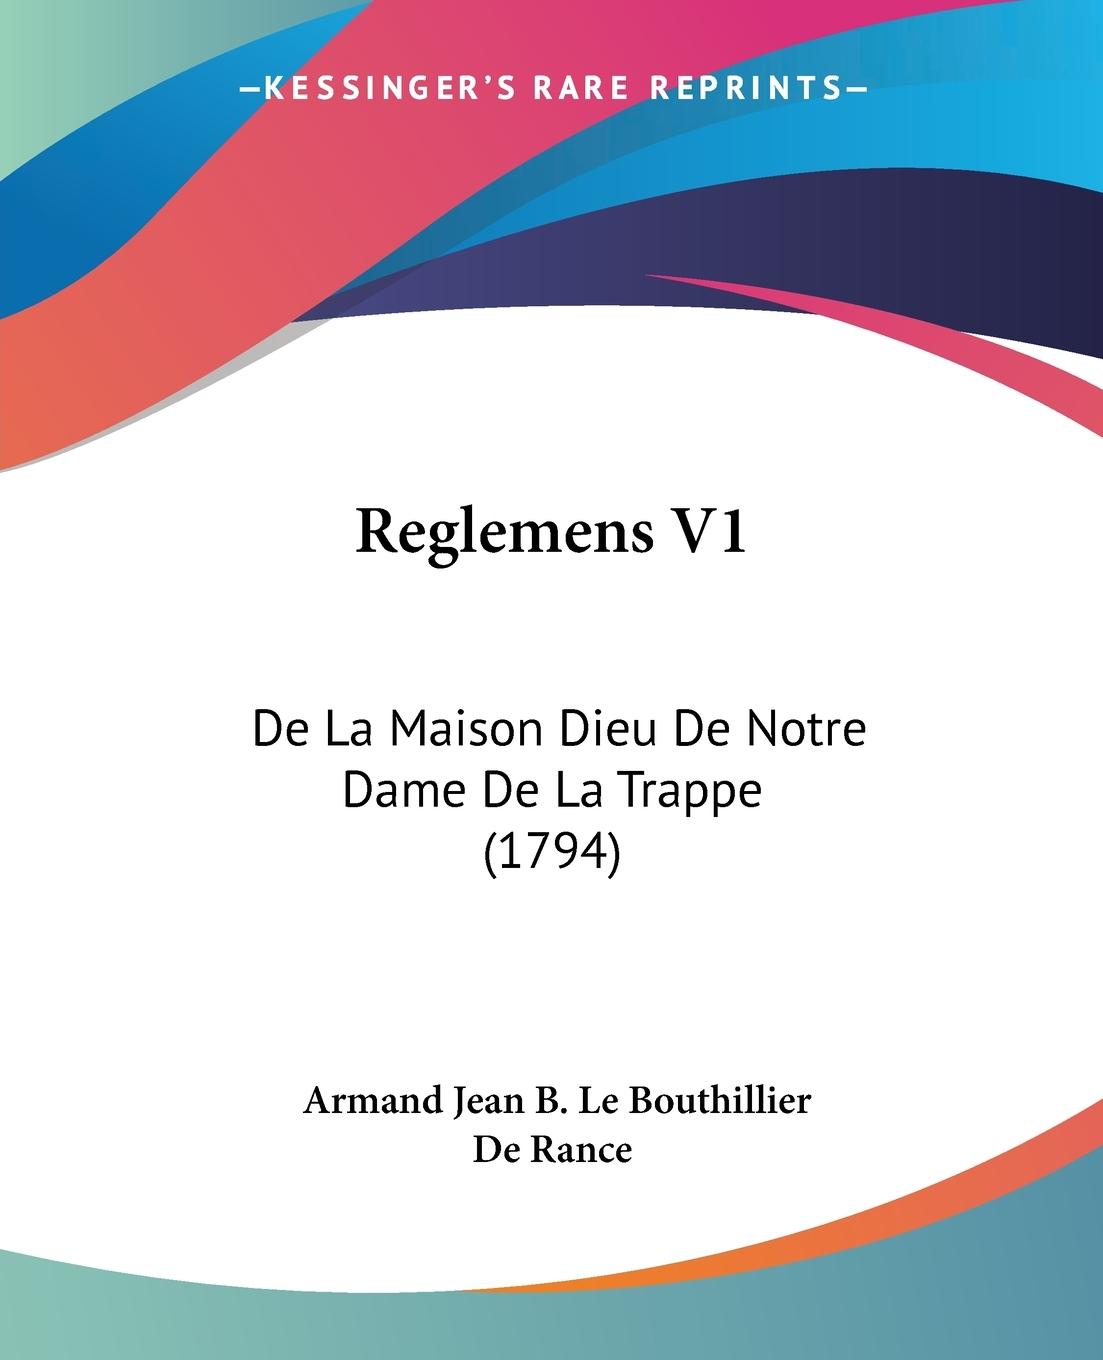 Reglemens V1 - De Rance, Armand Jean B. Le Bouthillier